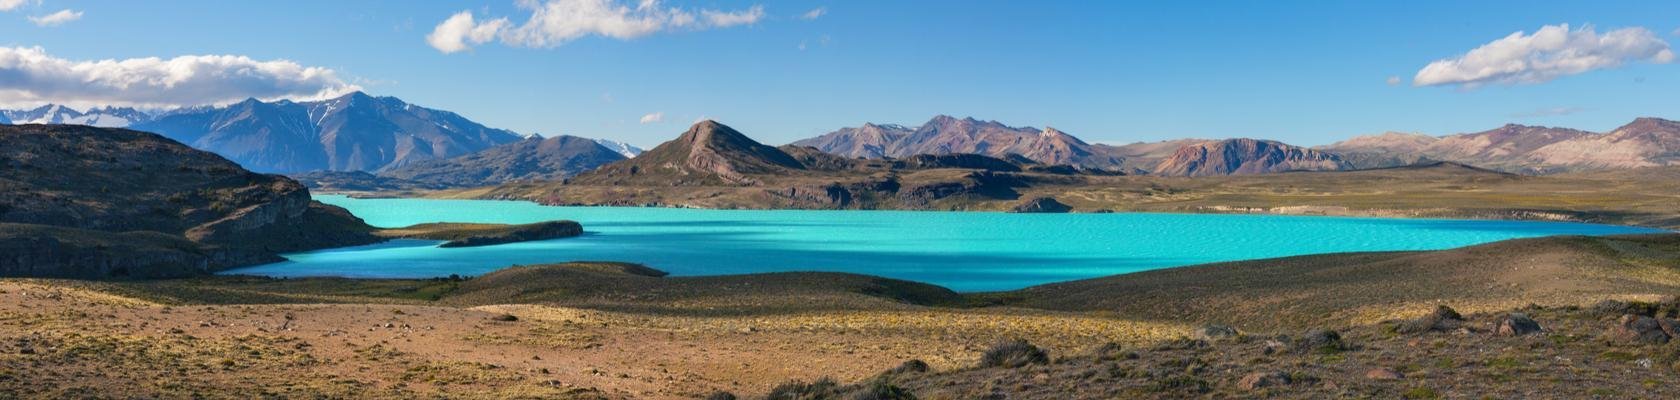 Perito Moreno-gletsjer